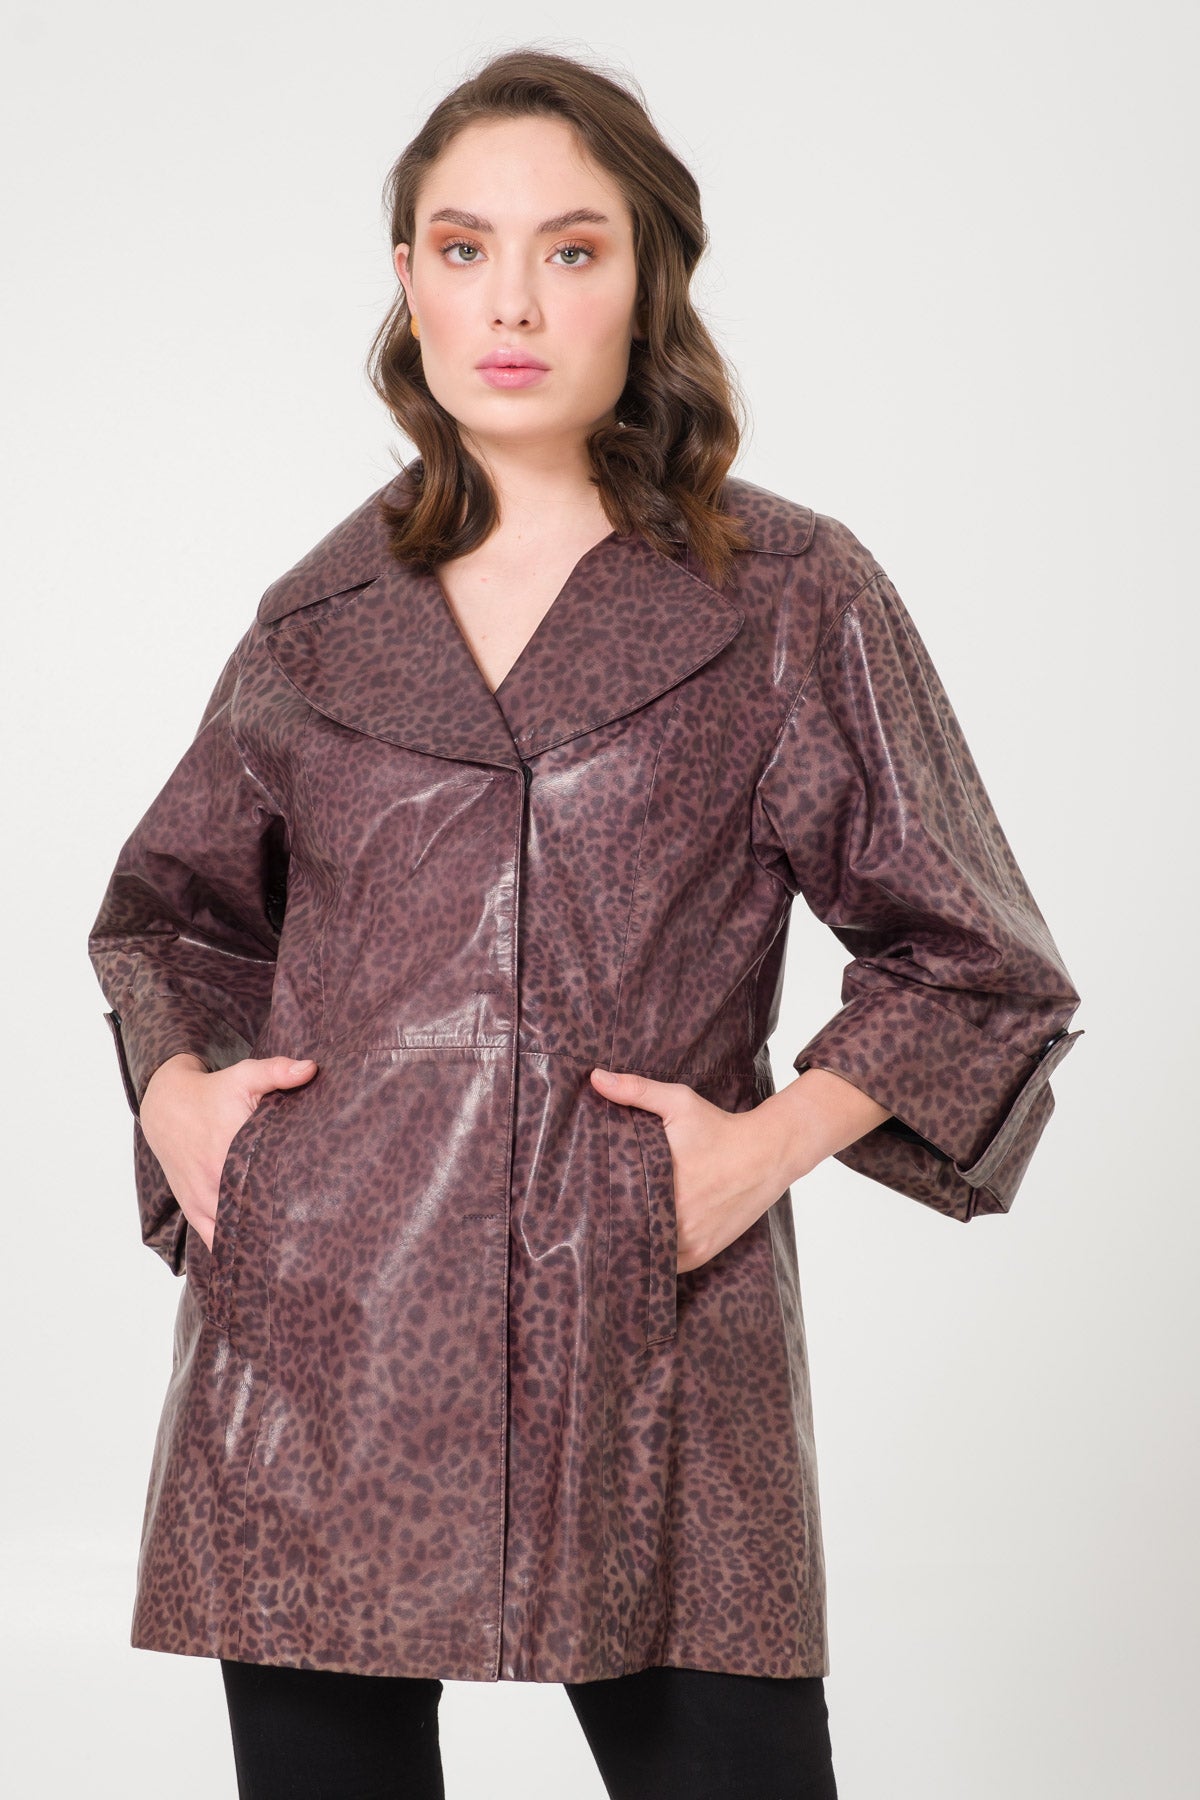 Leopard Pattern Leather Coat